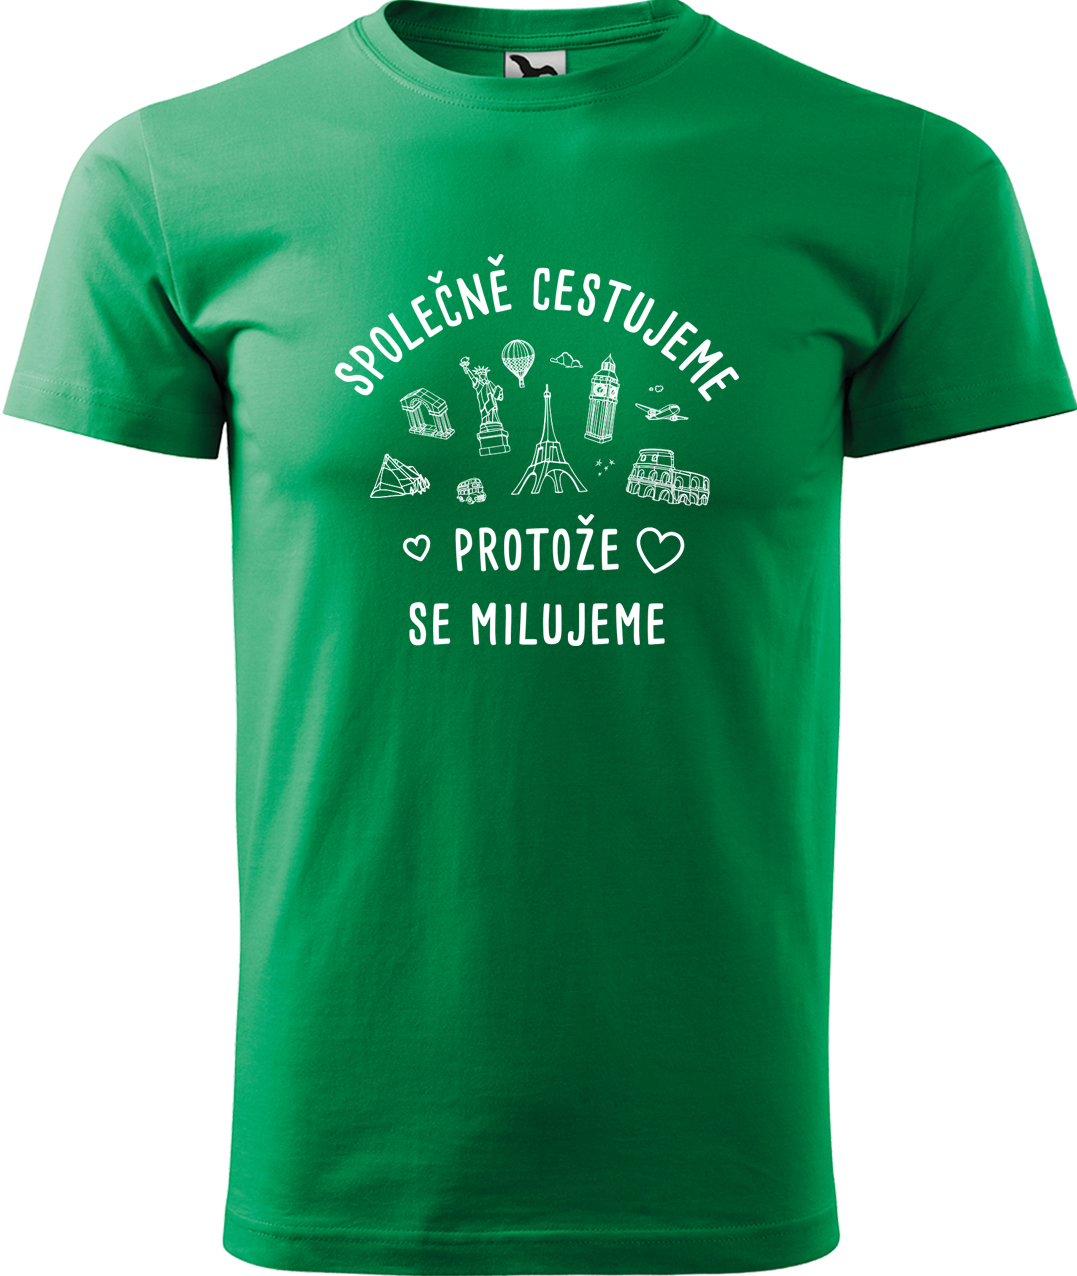 Pánské cestovatelské tričko - Společně cestujeme protože se milujeme Velikost: 4XL, Barva: Středně zelená (16), Střih: pánský